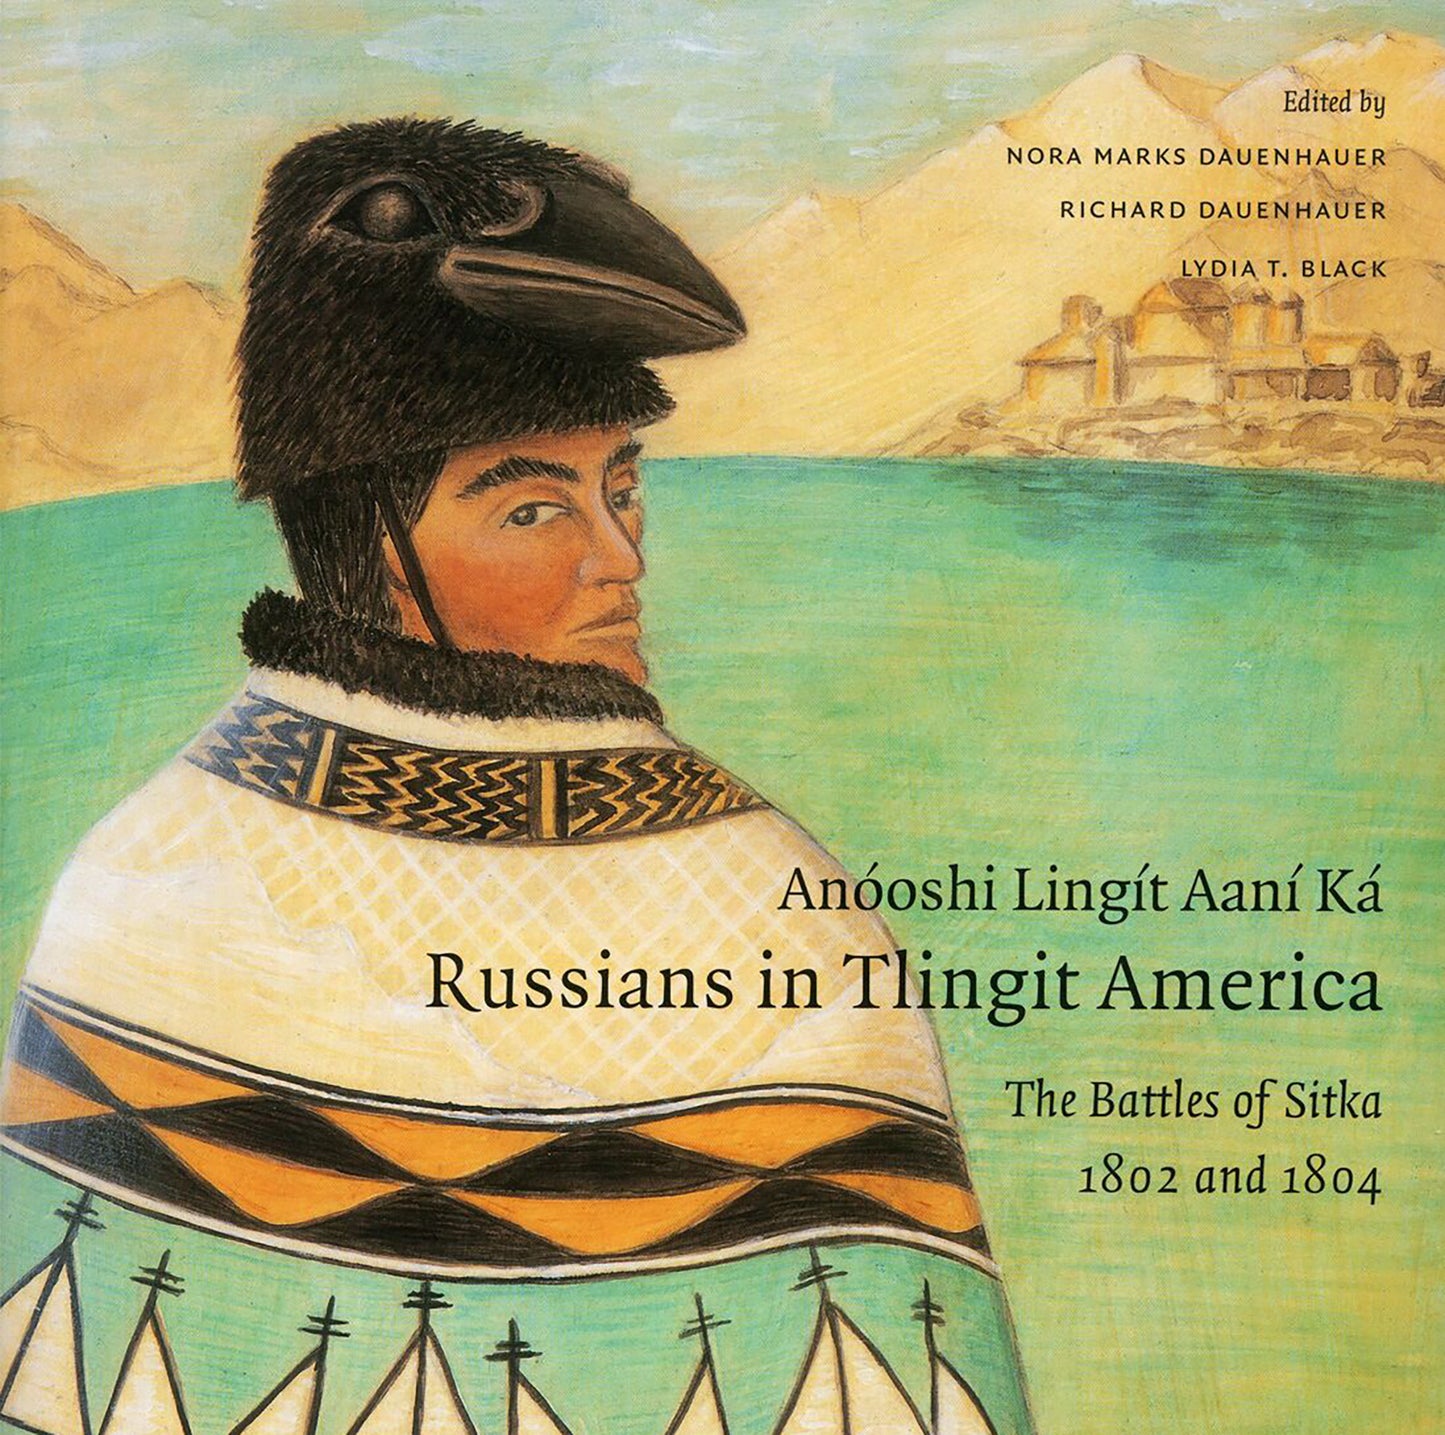 Book - "Anooshi Lingit Aani Ka­: Russians in Tlingit America", Dauenhauer & Black